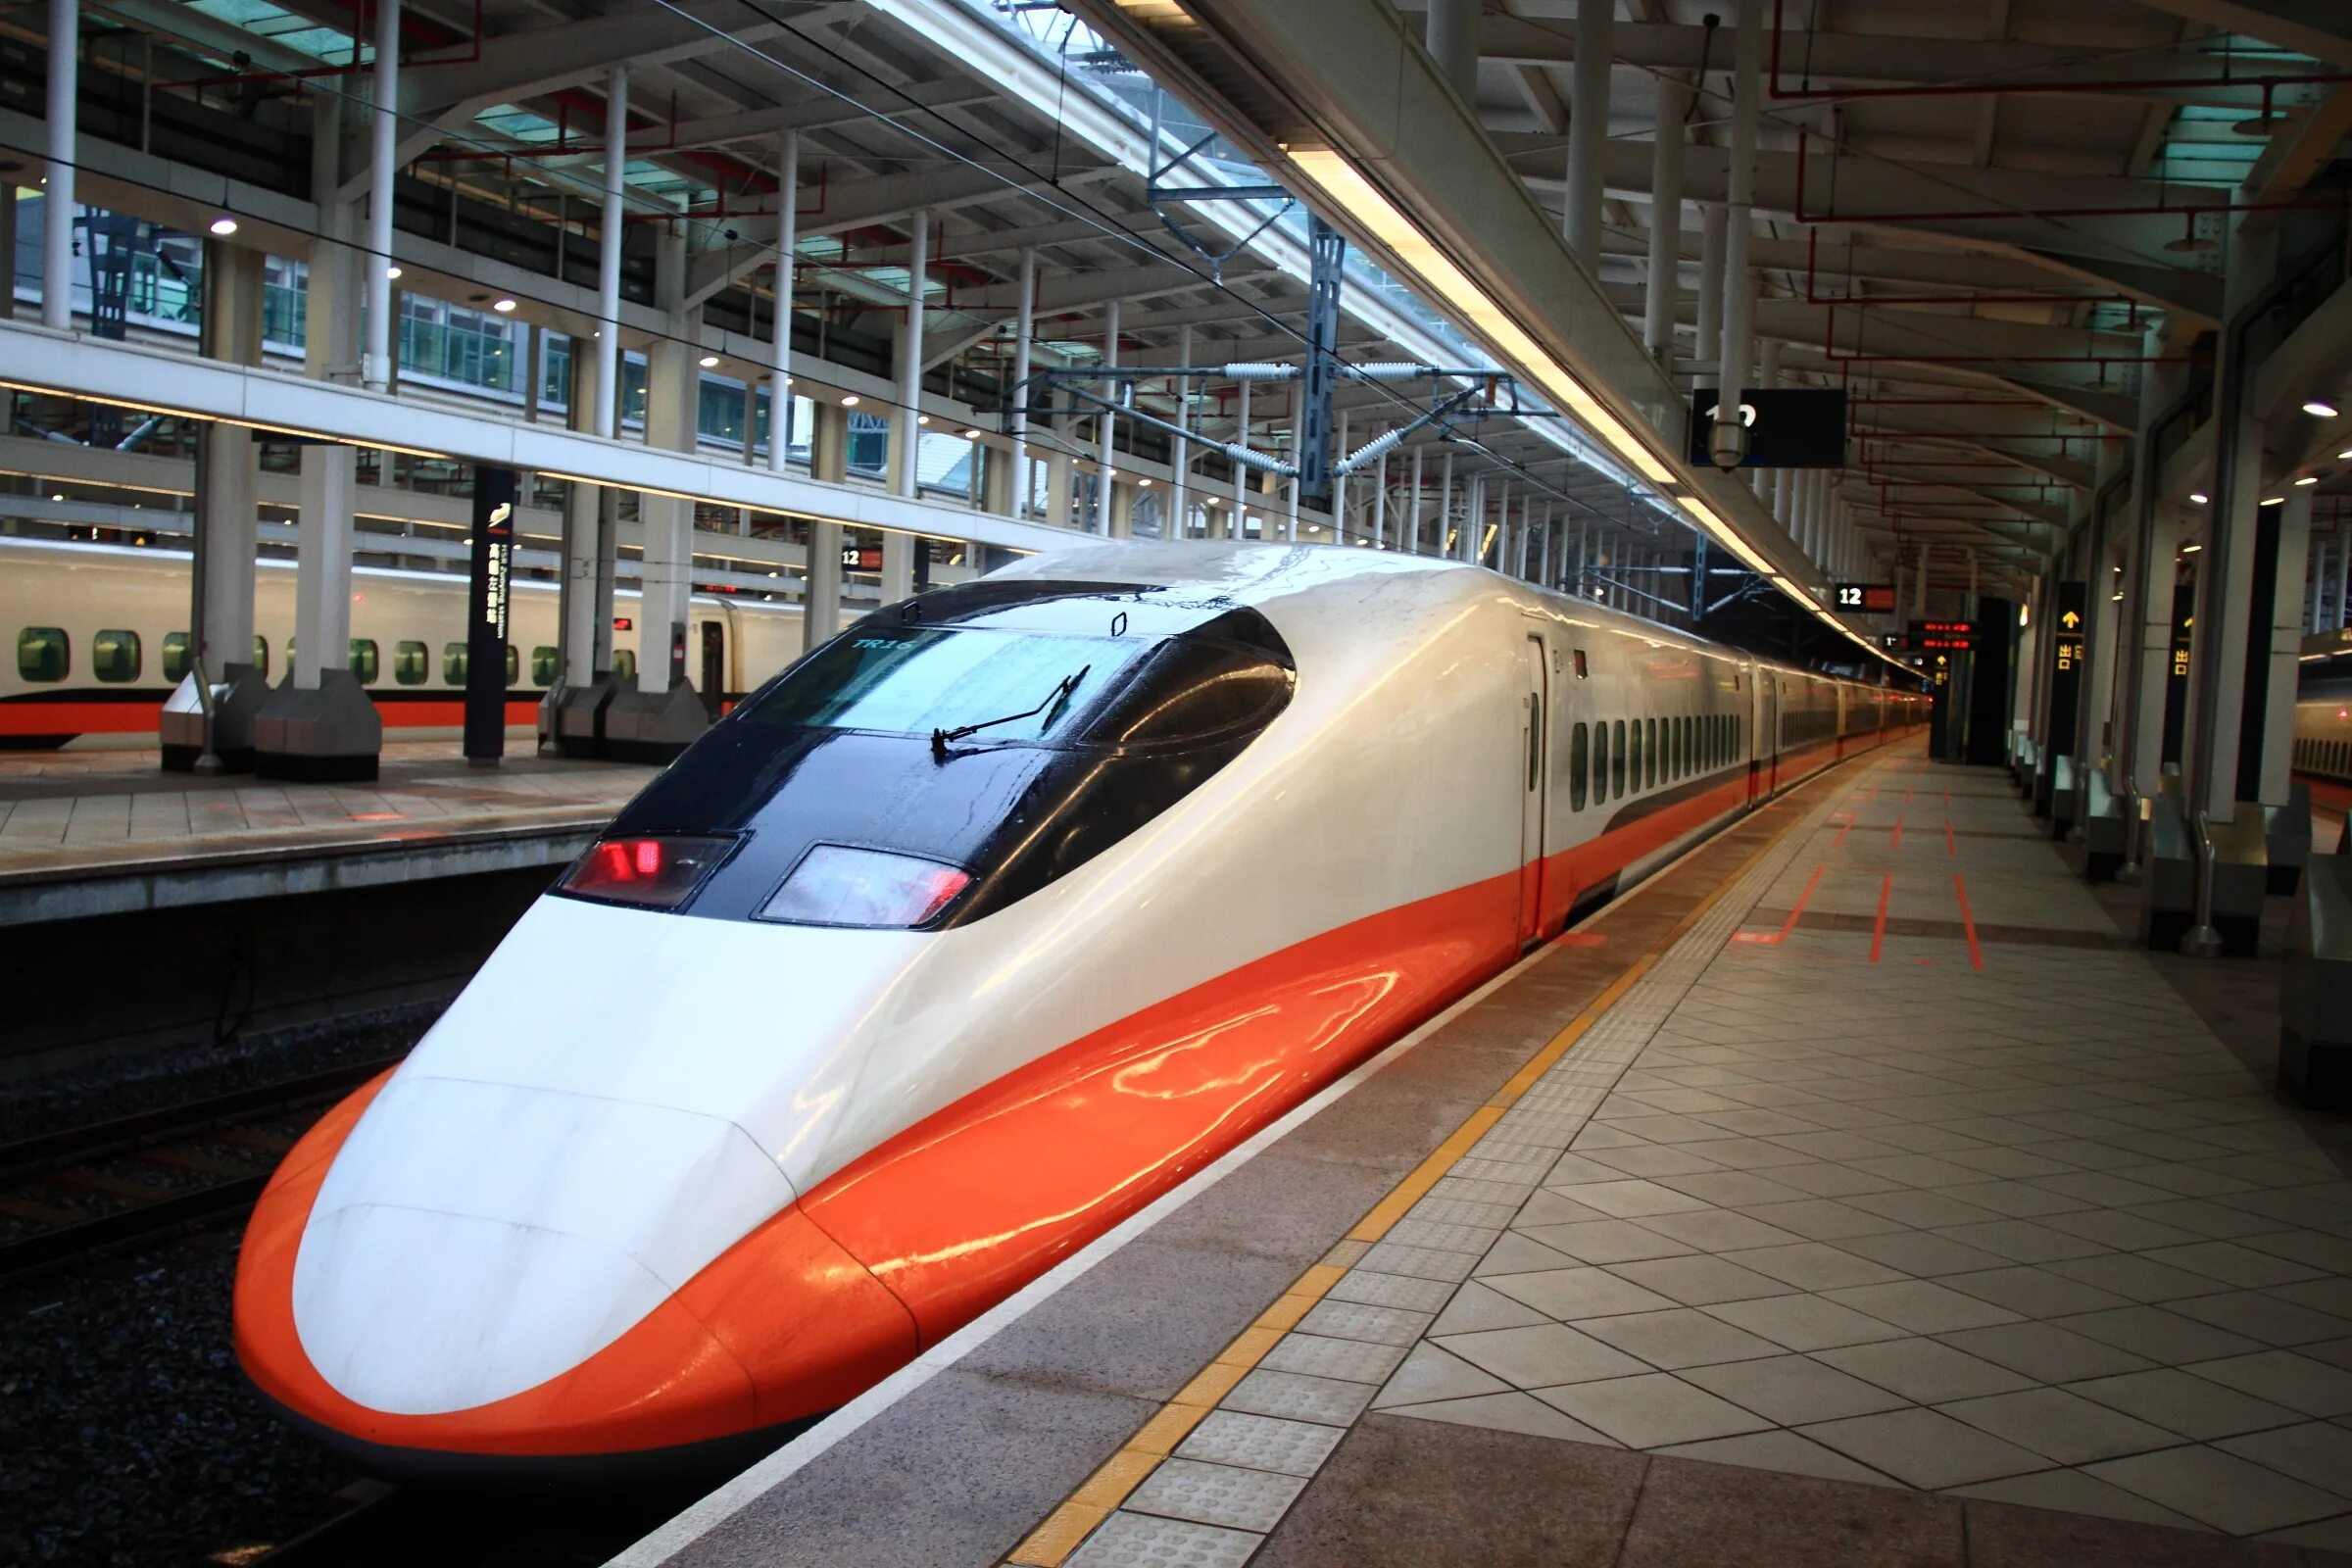 Скоростной поезд Синкансен. Высокоскоростные поезда Япония, Shinkansen. Синкансен скорость поезда. Скоростной поезд Токио.